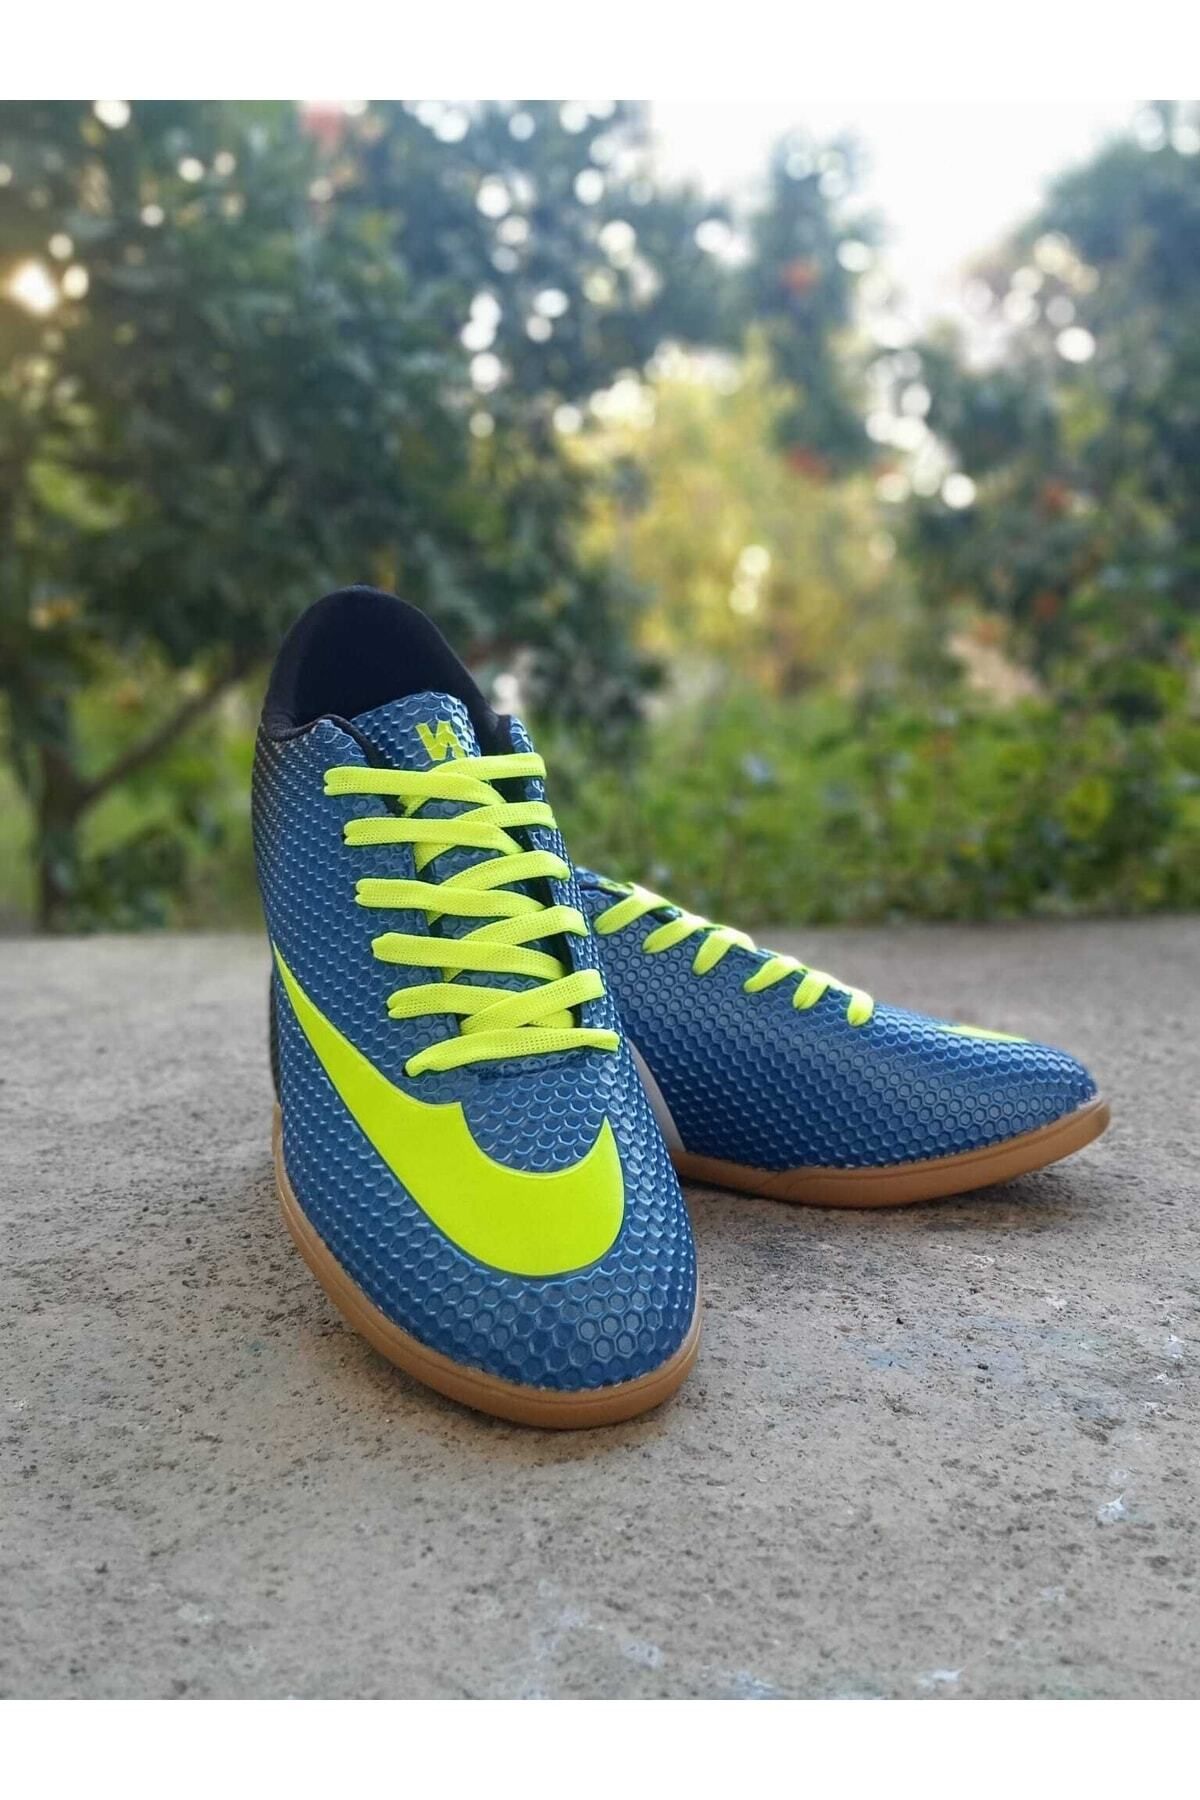 orkistore Unisex Mavi Sarı Voleybol Hentbol Futsal Salon Ayakkabısı Kaymaz Kauçuk Taban Pomem Parkurayakkabısı